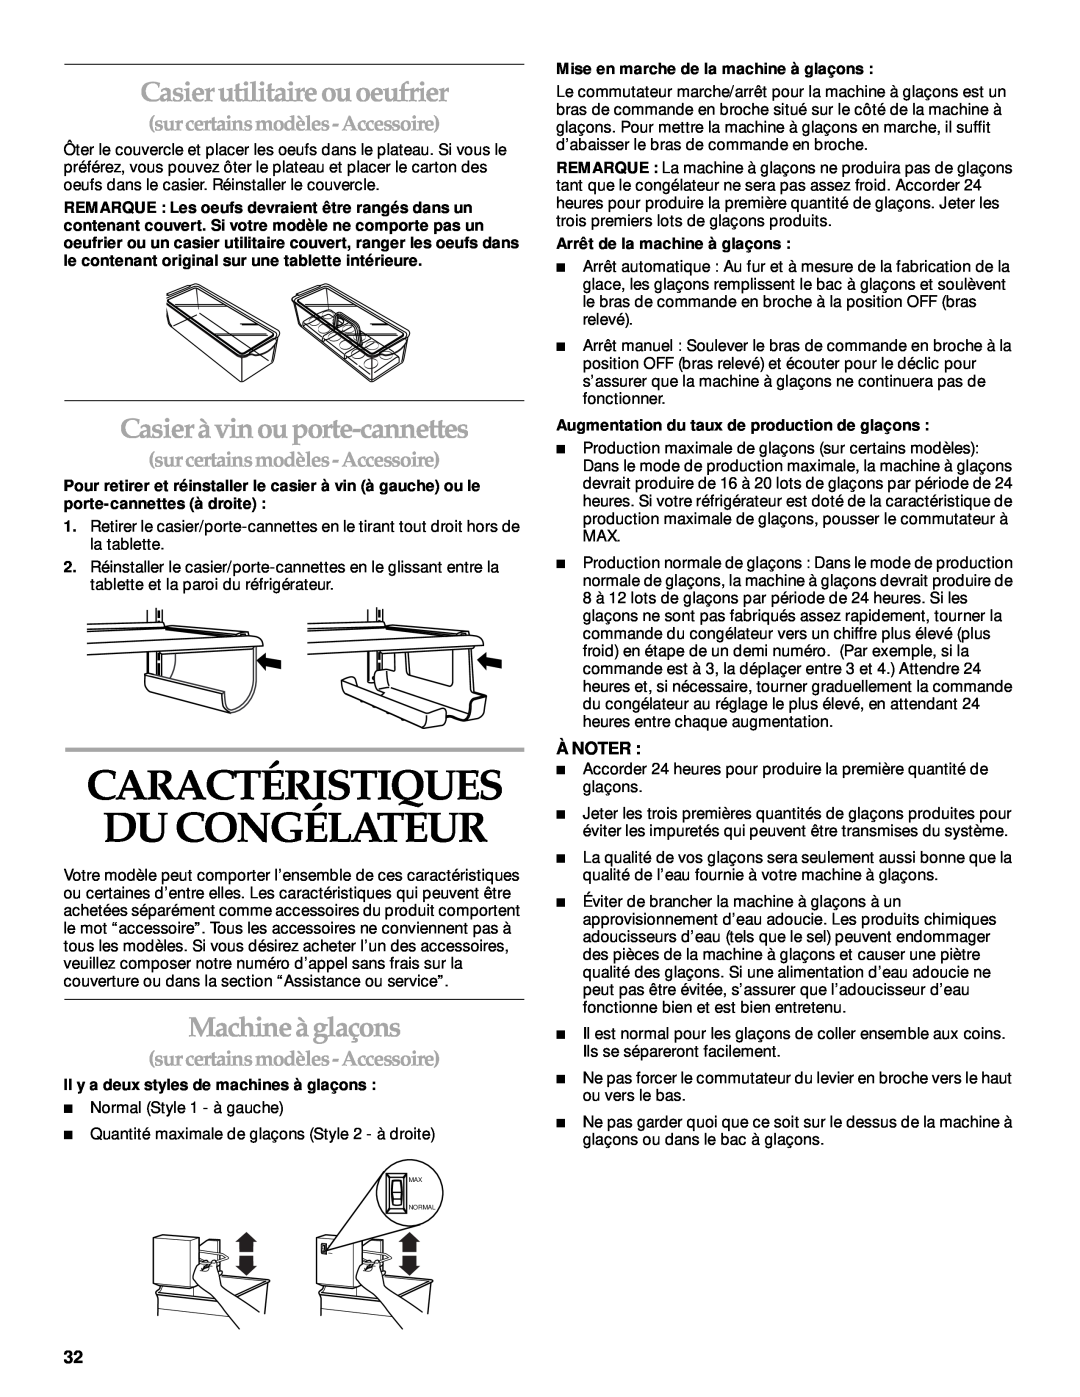 KitchenAid 2205264 manual Caractéristiques Du Congélateur, Casier utilitaire ou oeufrier, Casier à vin ou porte-cannettes 